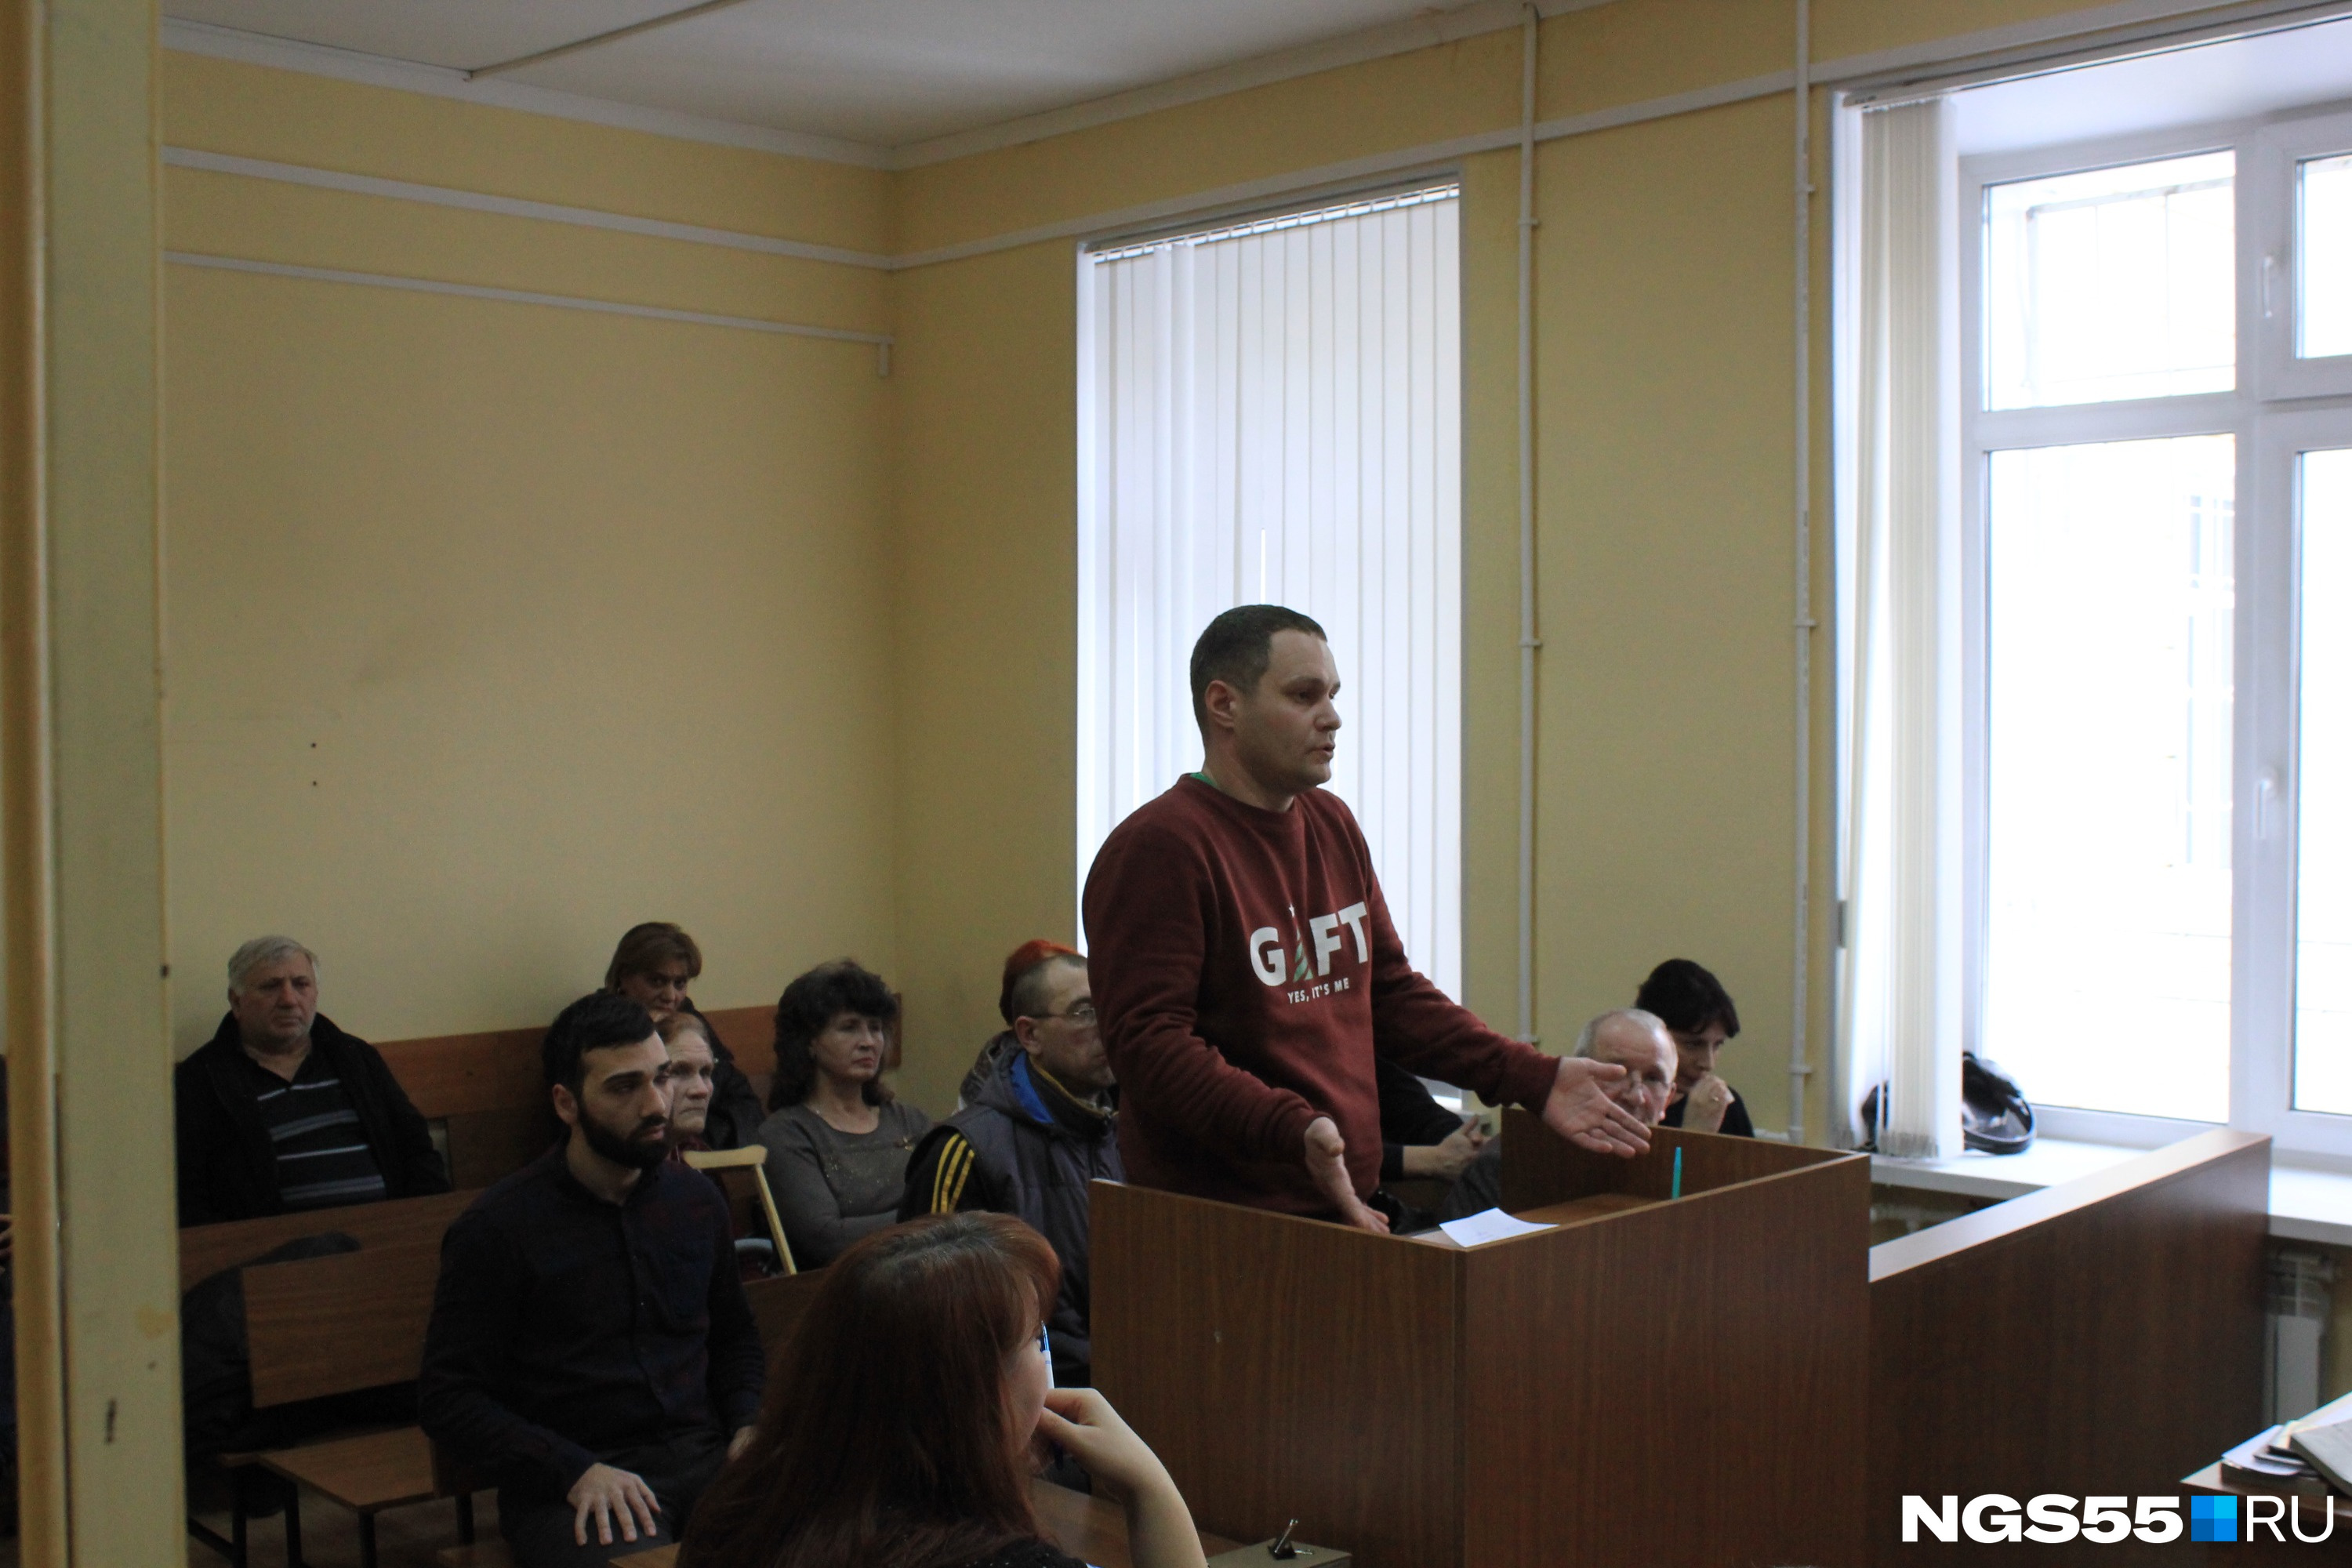 Дмитрий Ванюков был в шоке, когда услышал, что его автомобиль хотят арестовать